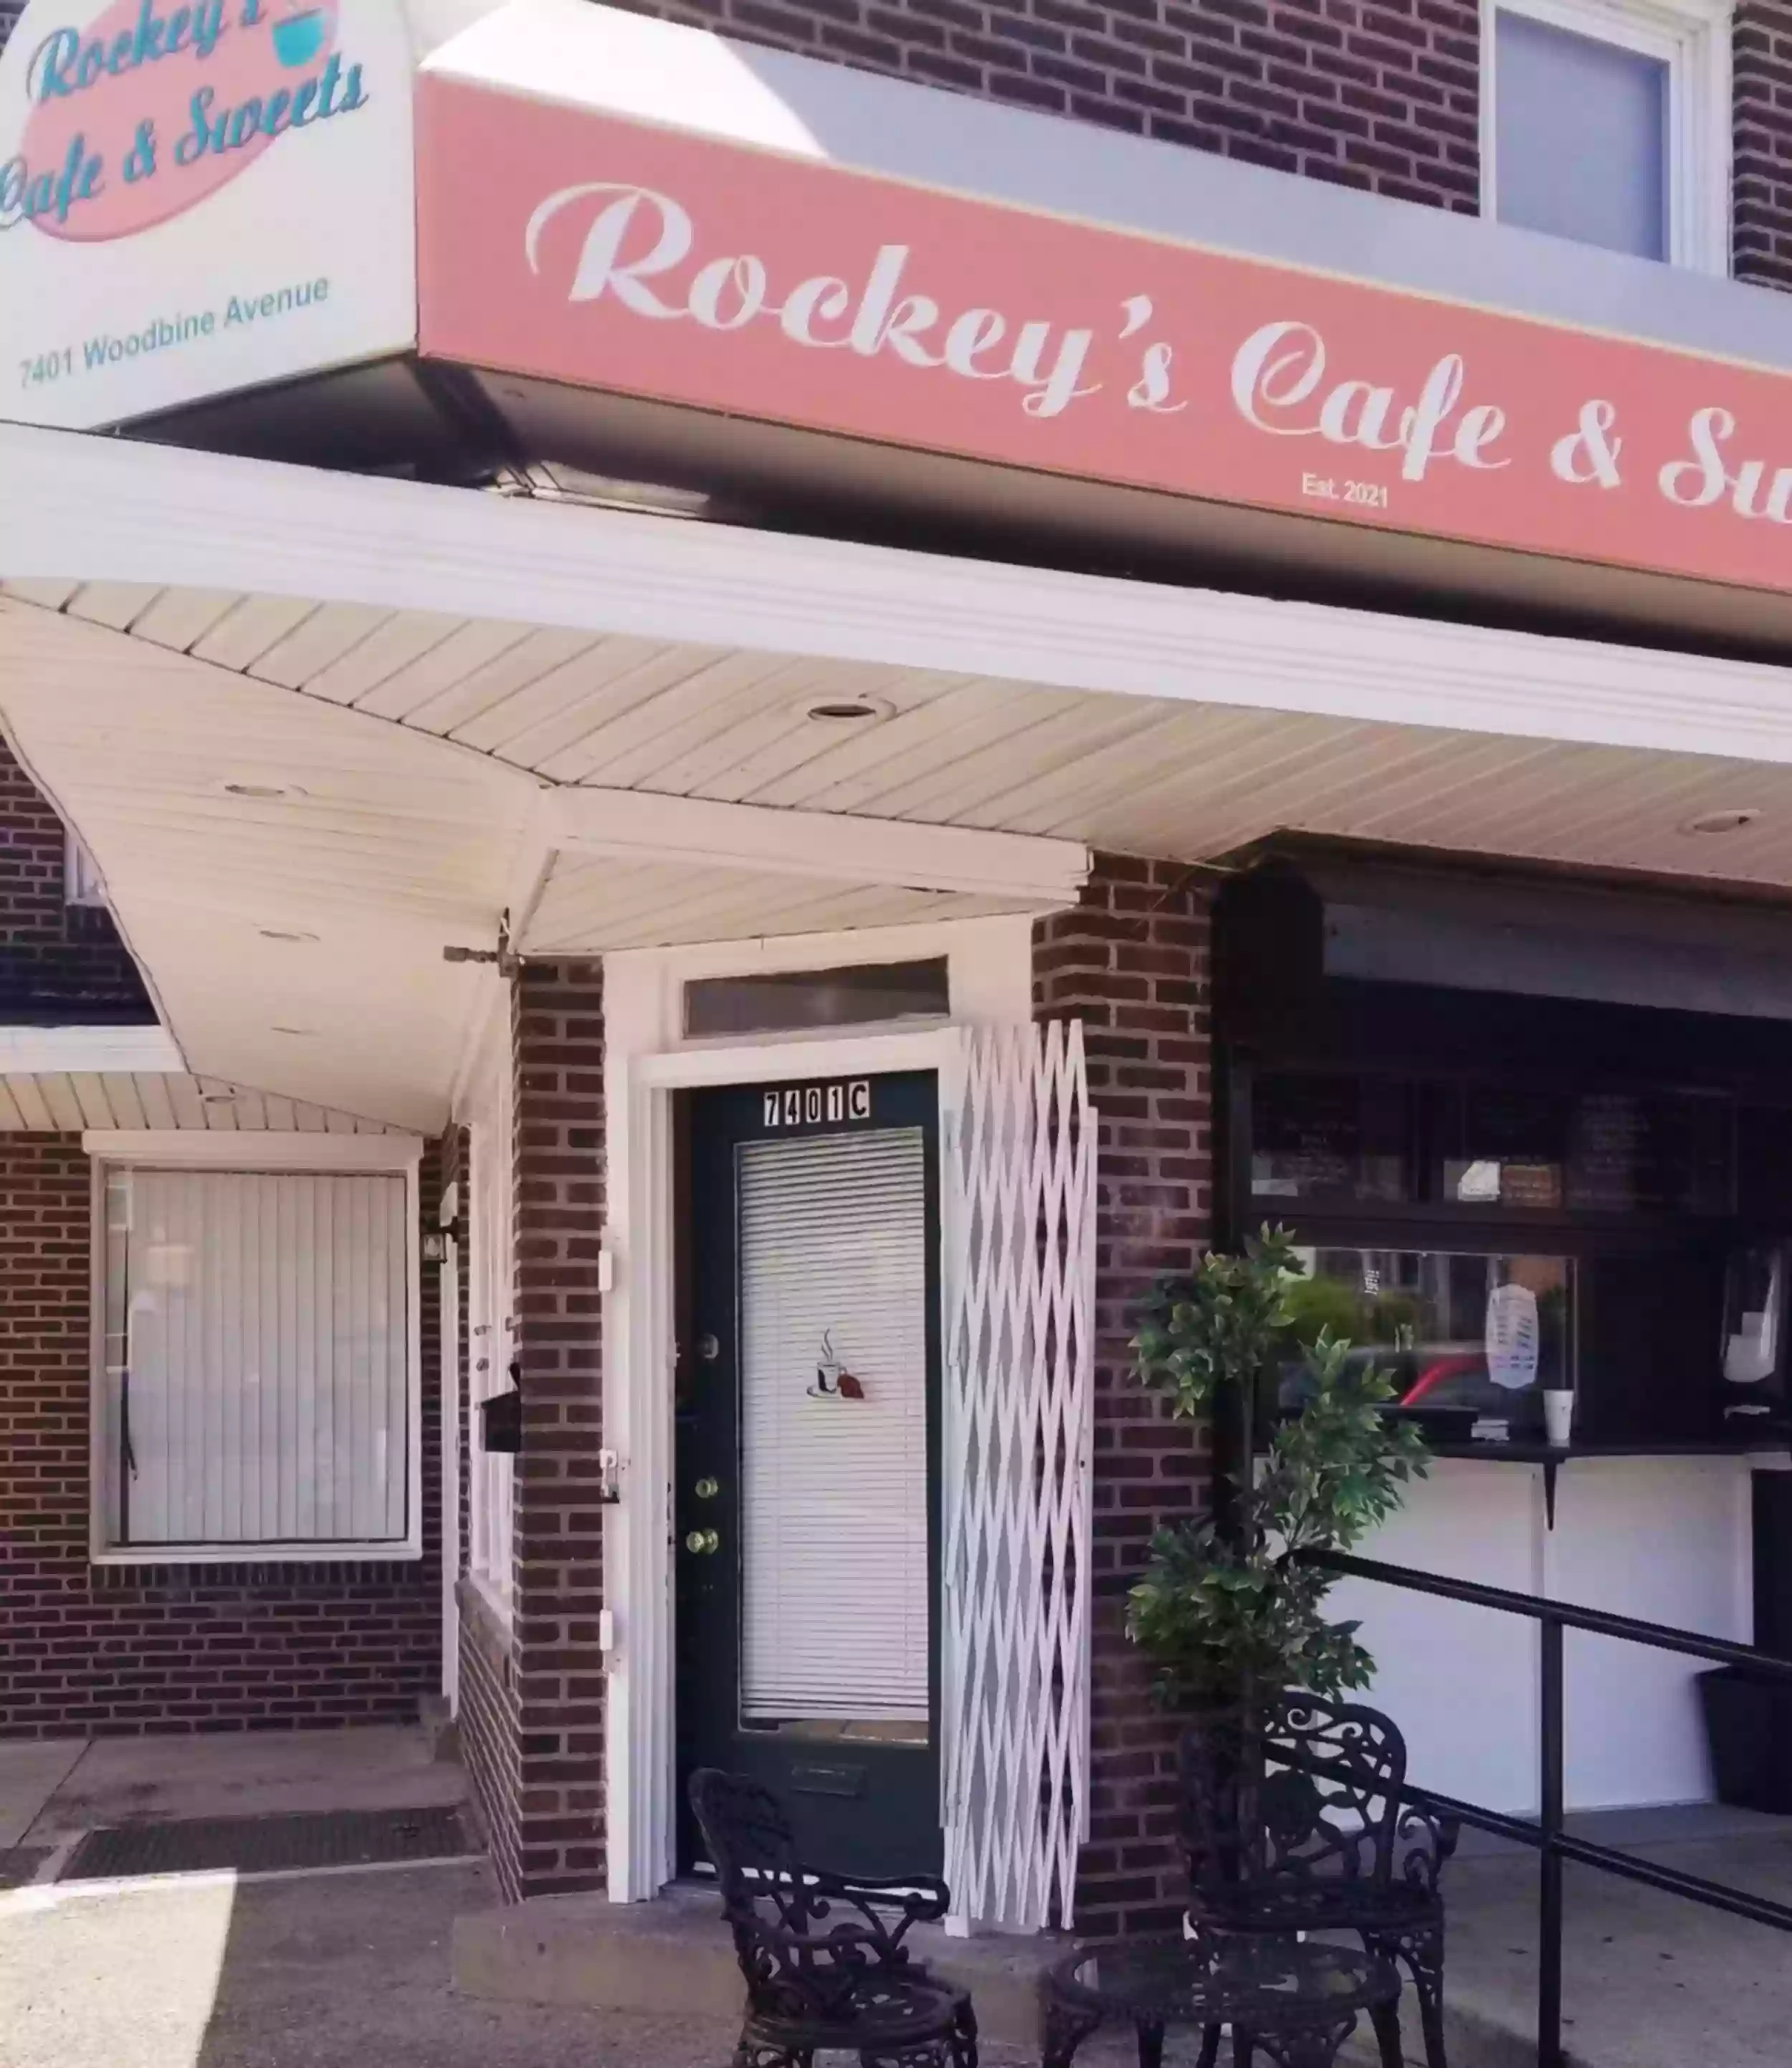 Rockey's Café & Sweets